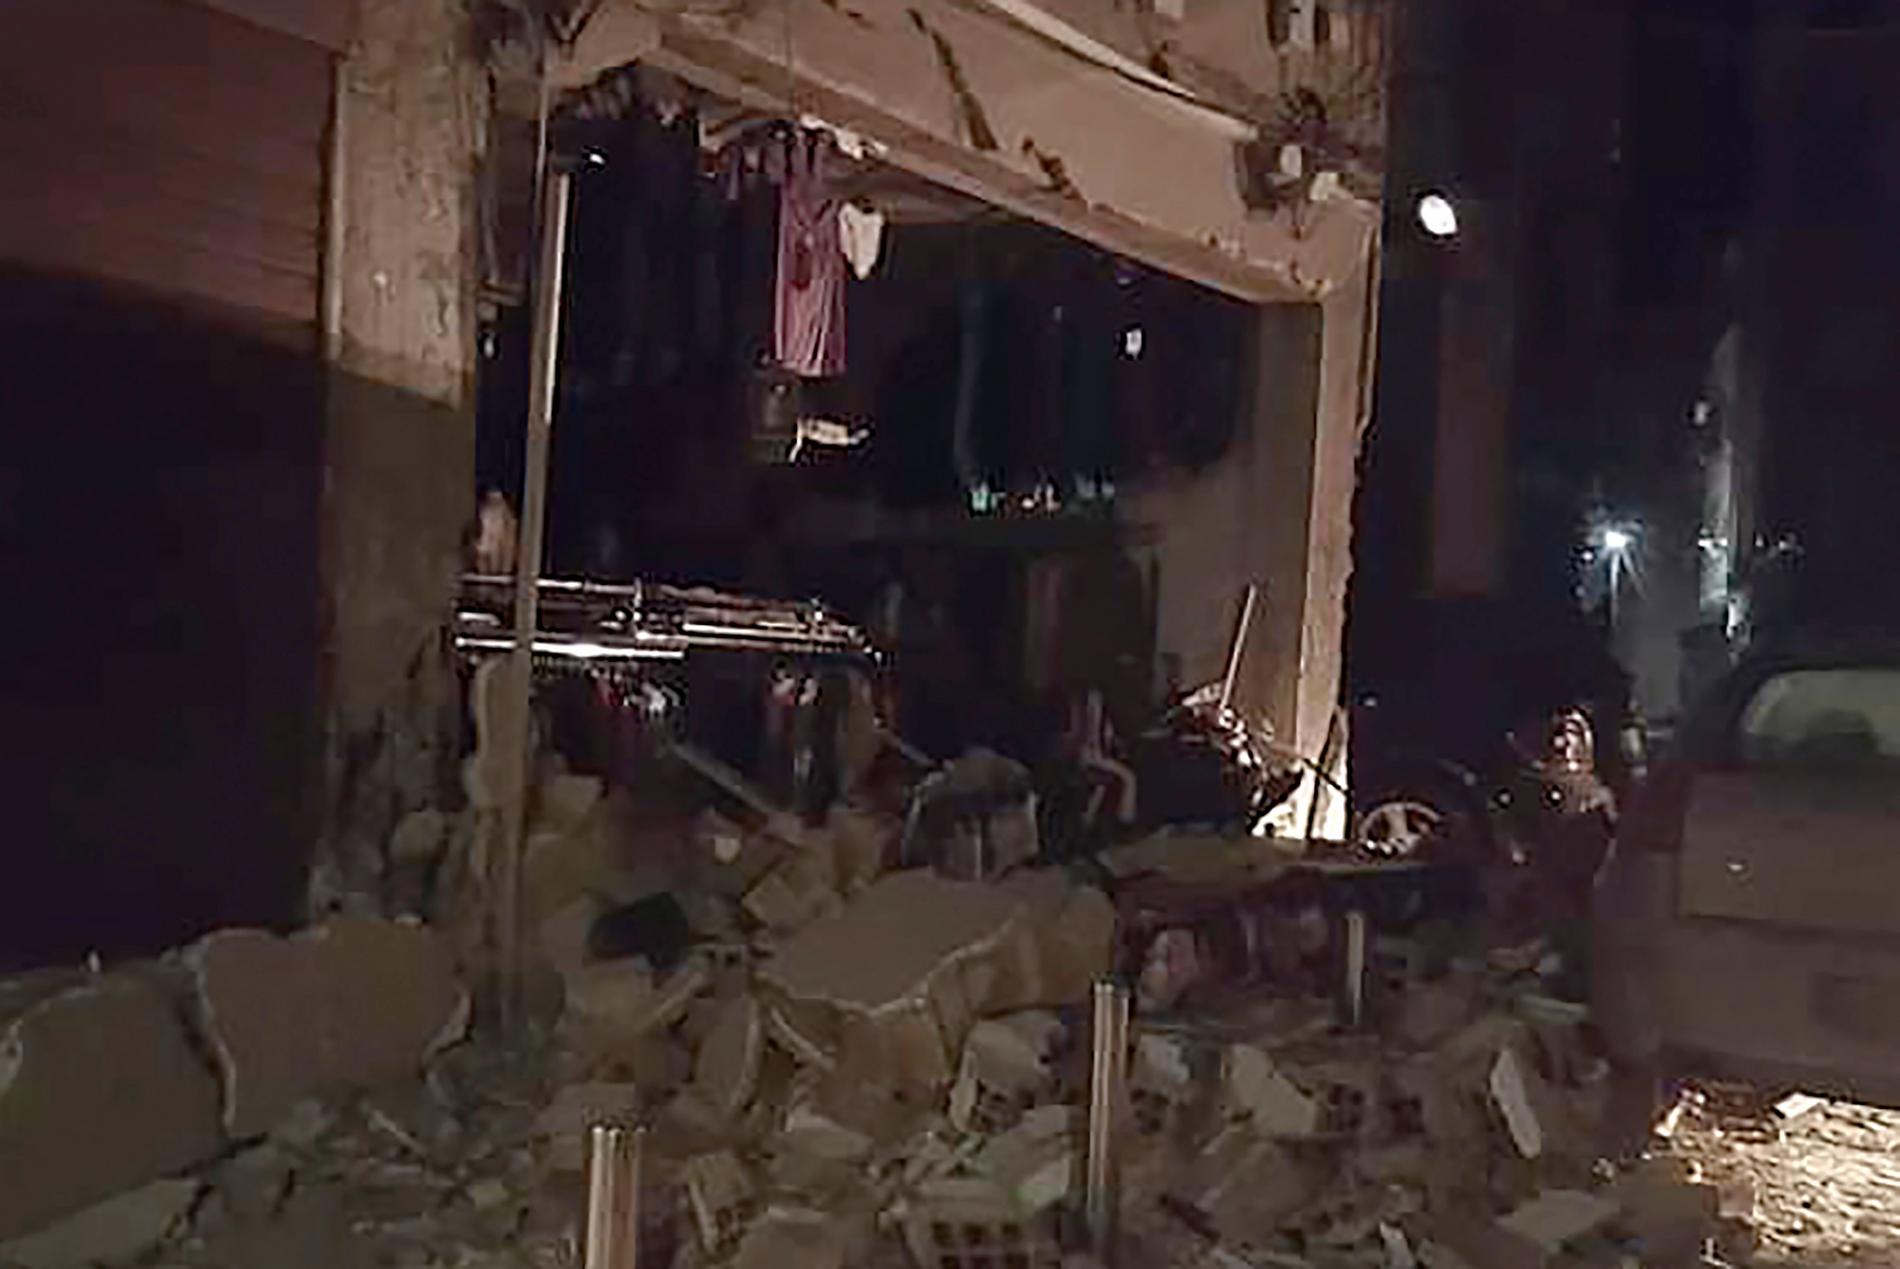 Jordbävningen orsakade betydande skador på byggnader i såväl Tirana som Durrës och Thumanë.